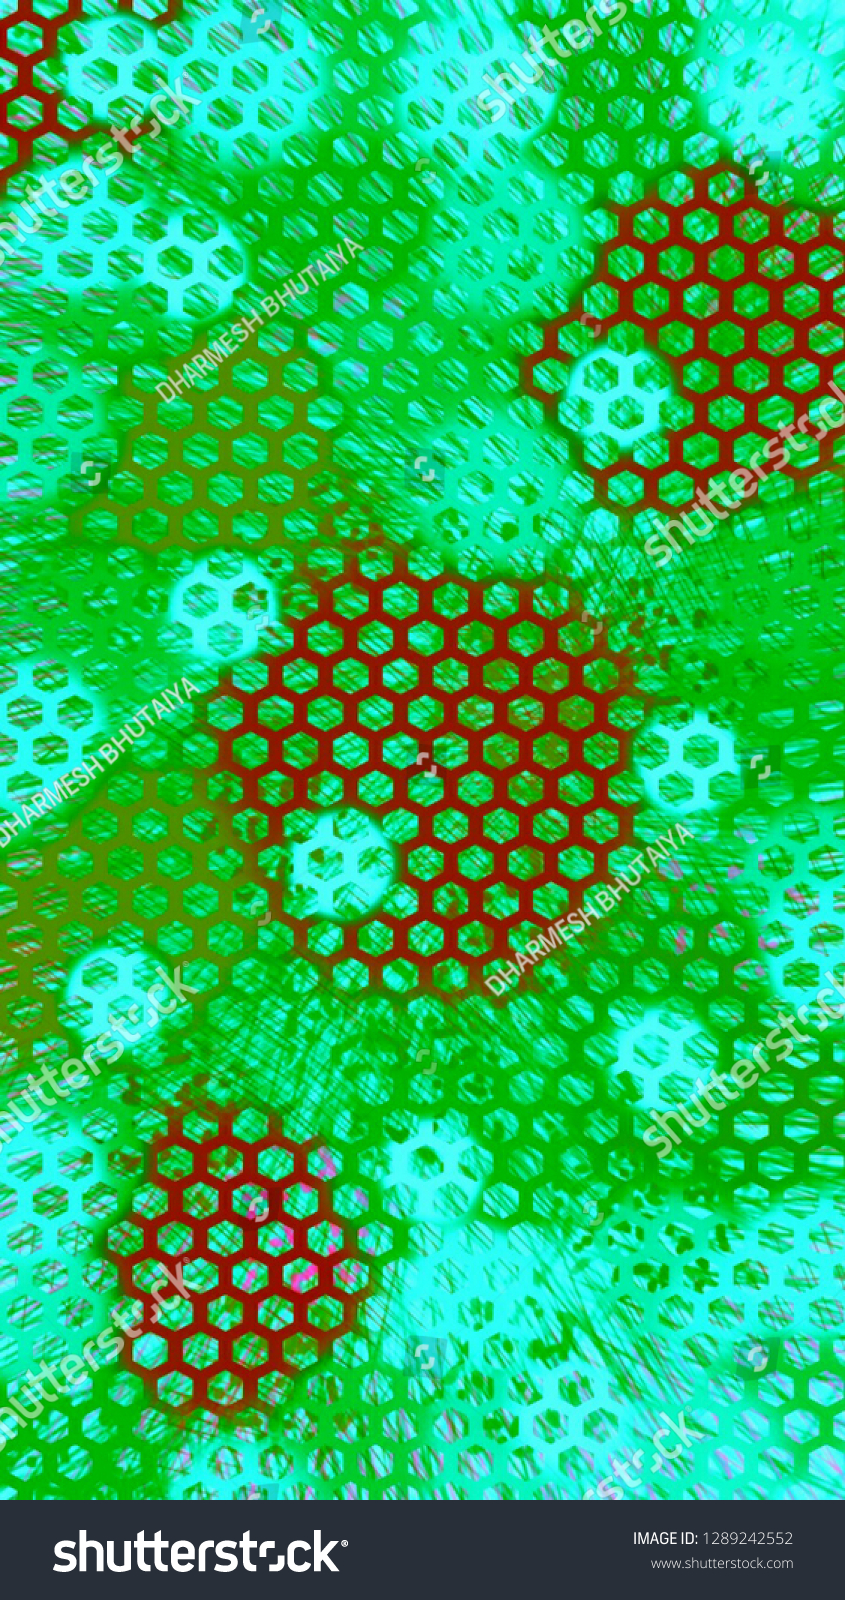 Hexagonal Net Hd Wallpaper Background Design Stock Illustration